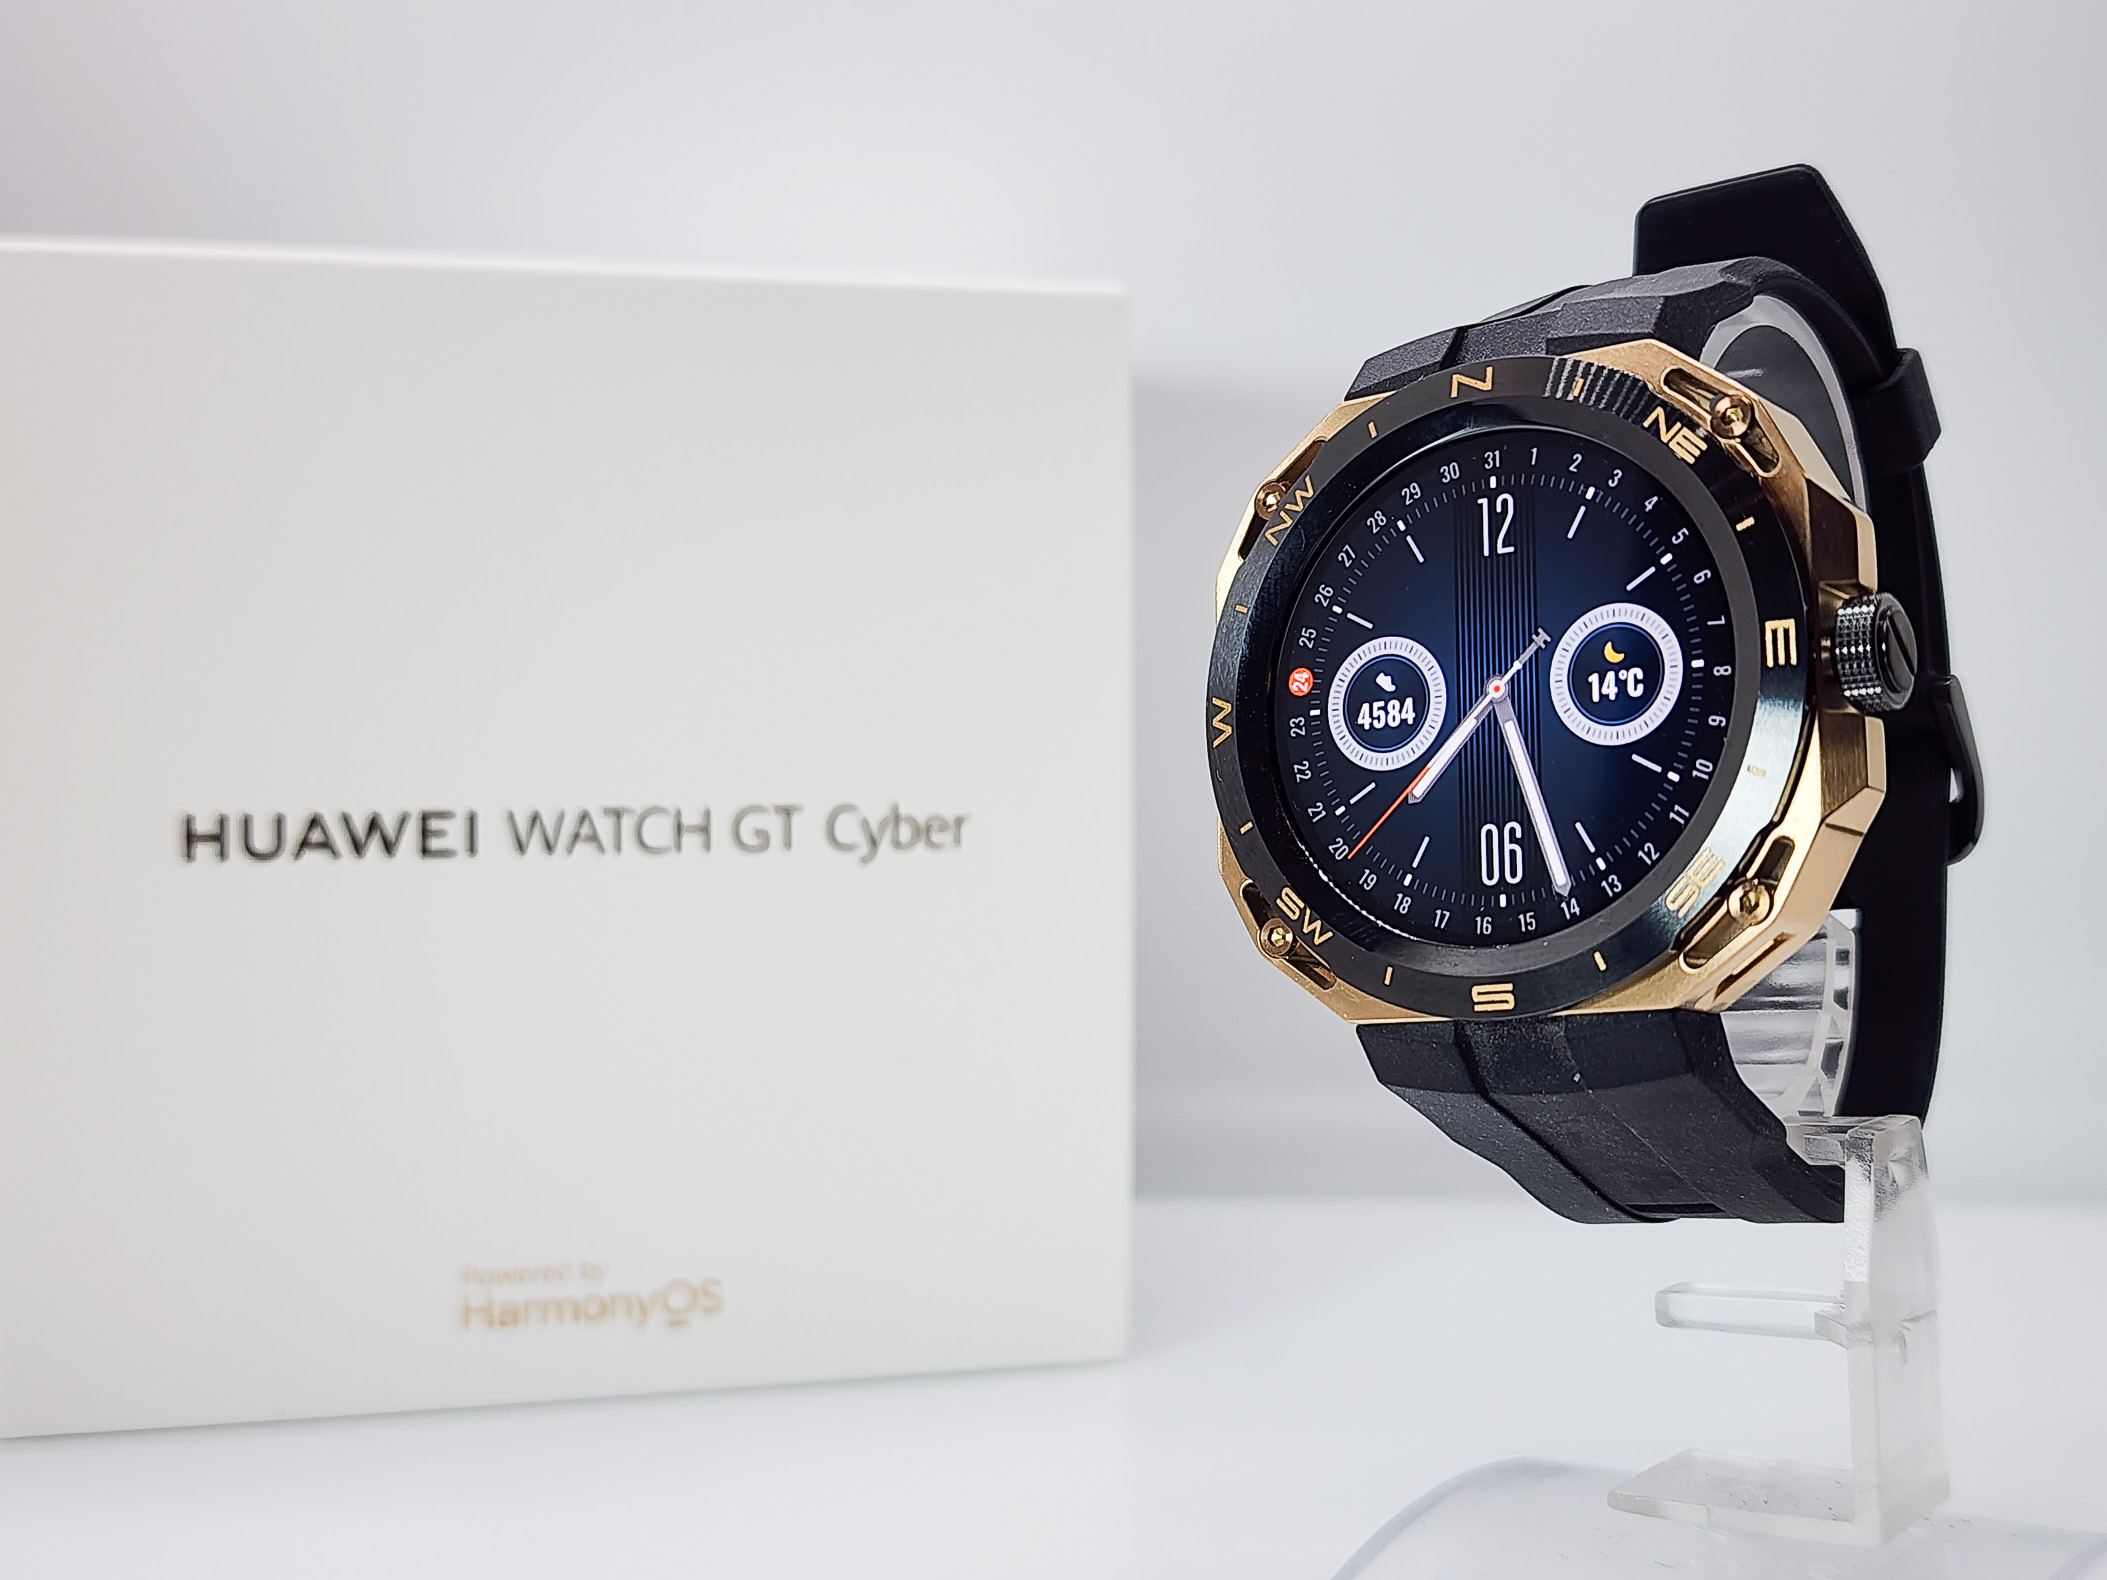 Huawei Watch GT Cyber レビュー